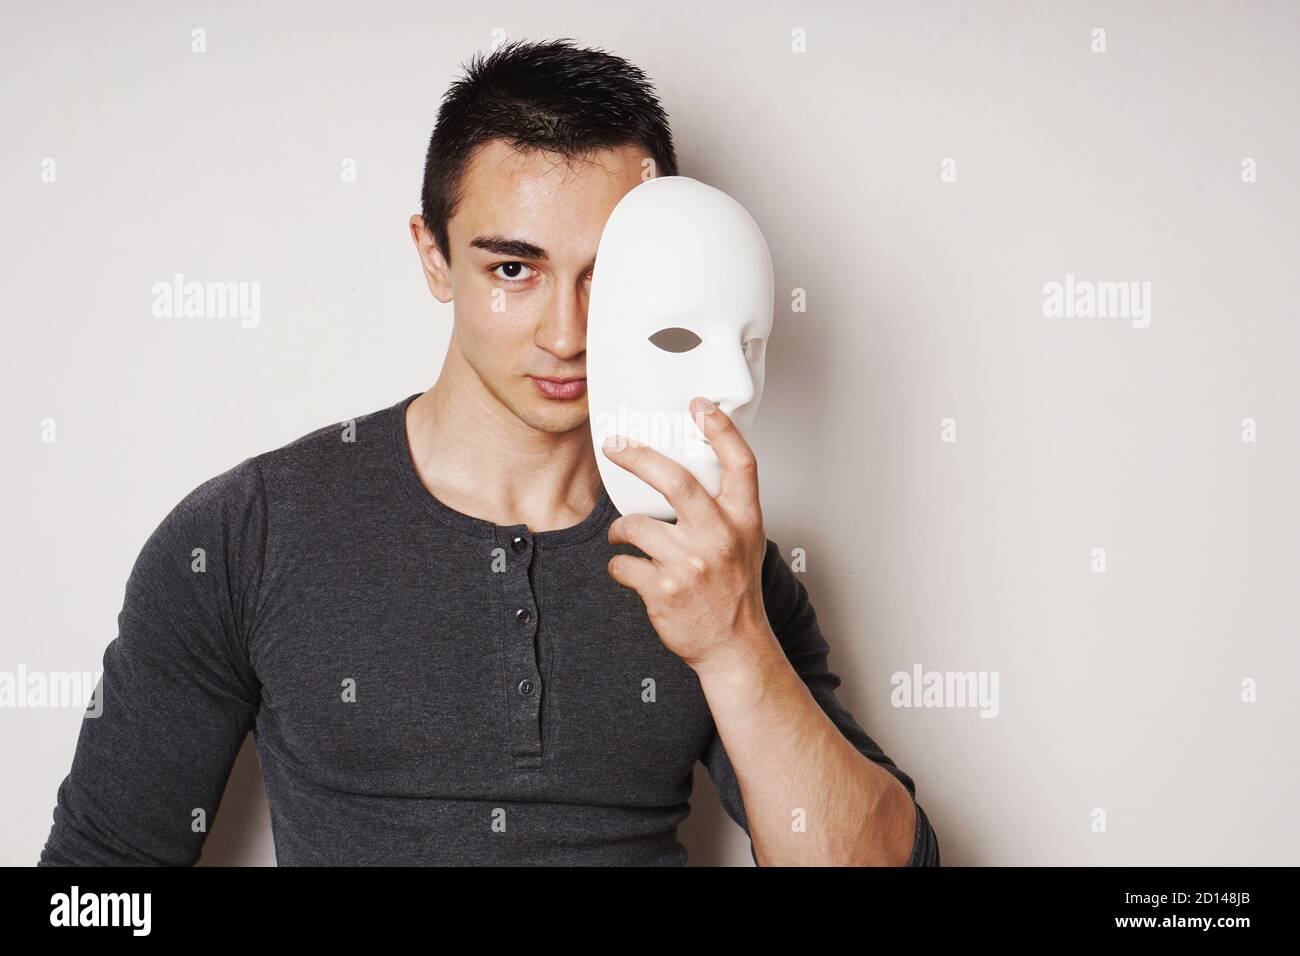 jeune homme qui prend le masque blanc révélant le visage et l'identité - avec espace de copie Banque D'Images